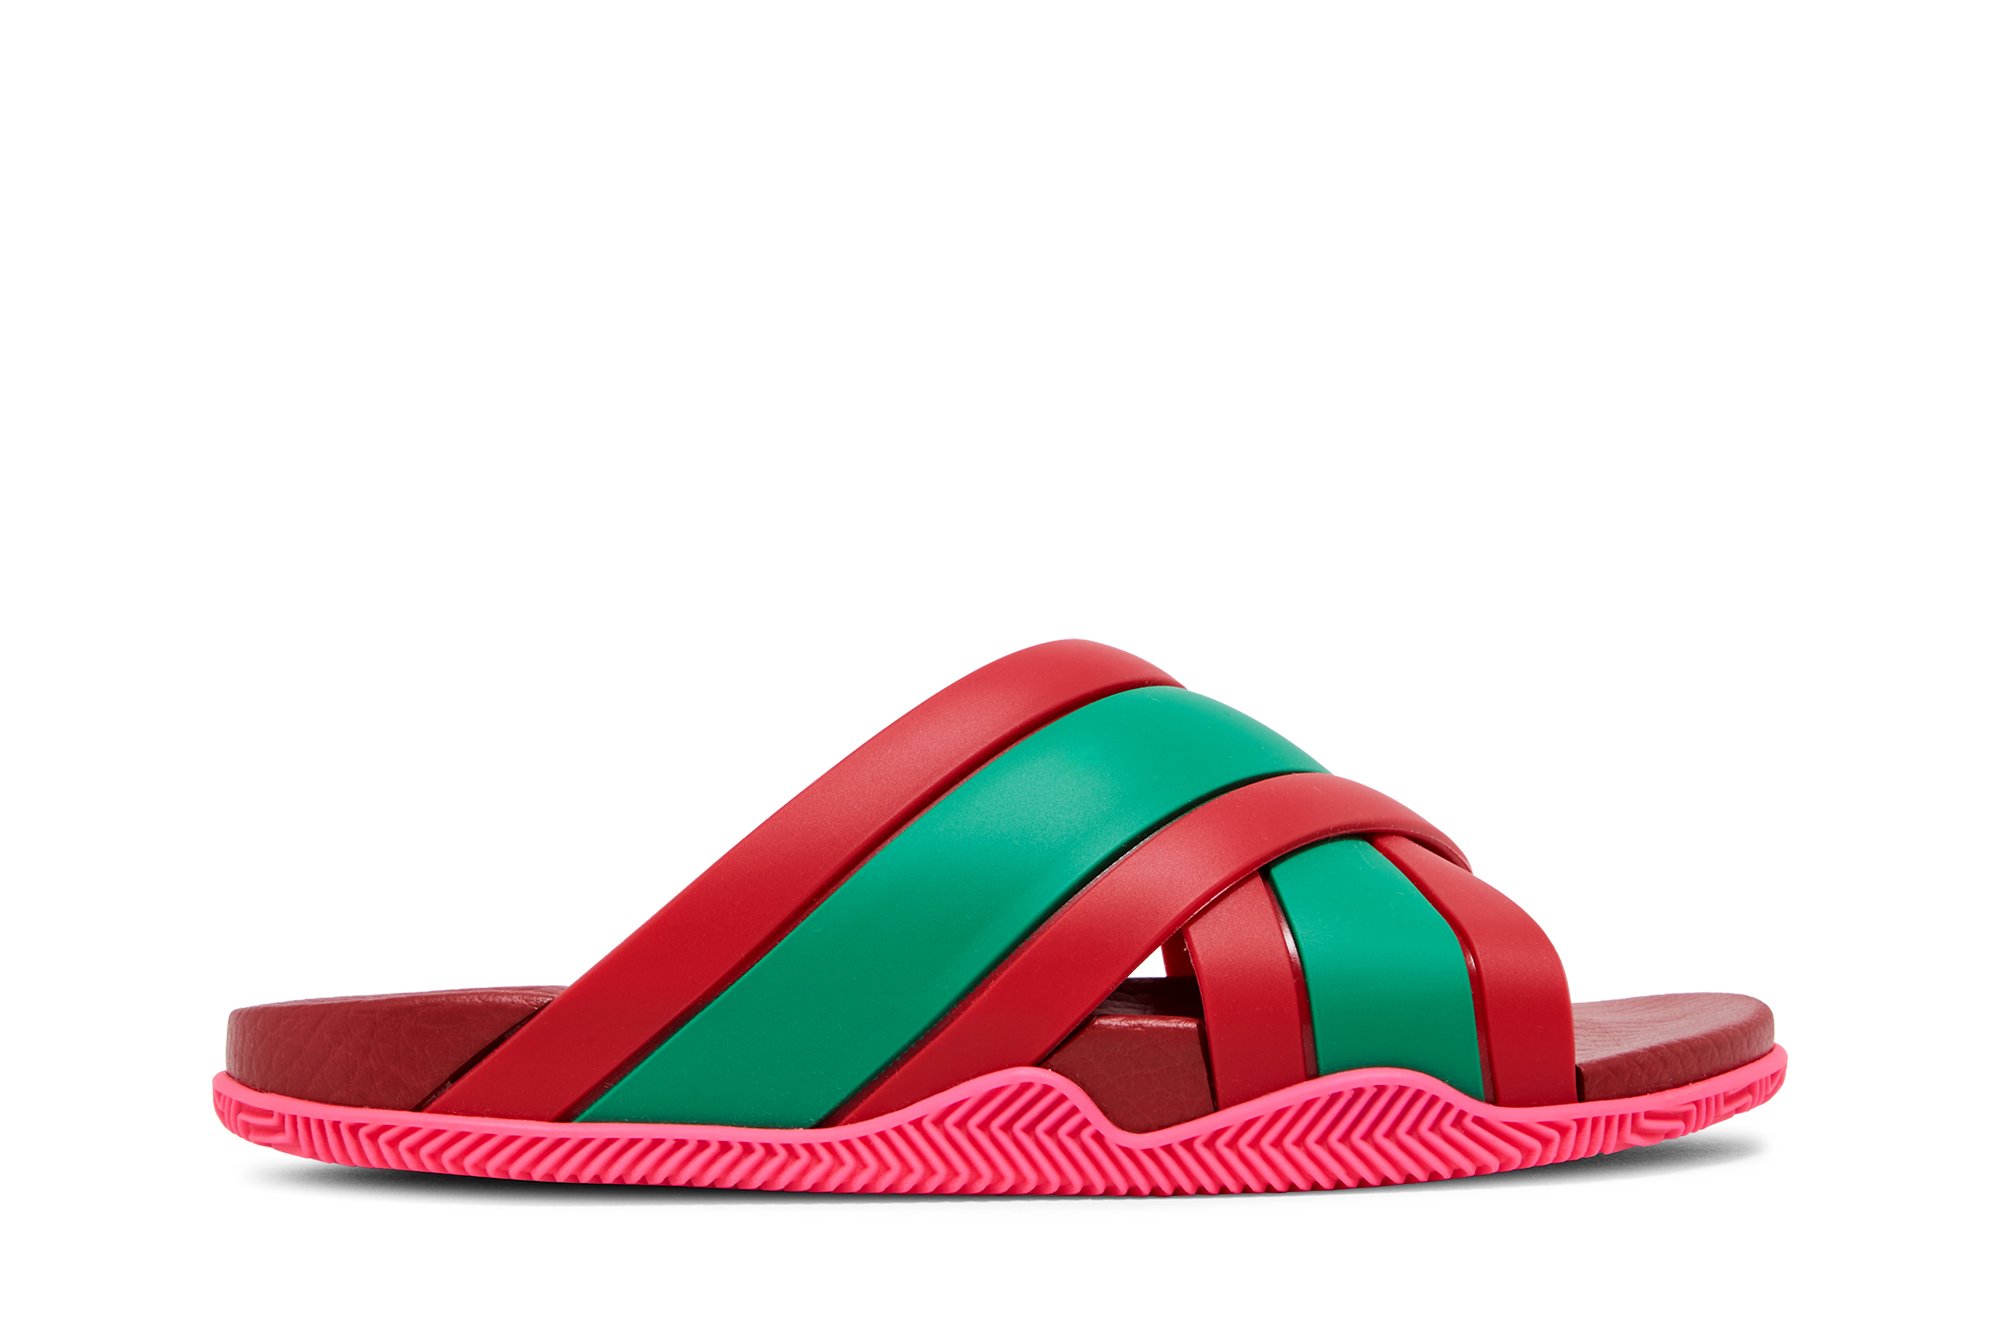 Gucci Wmns Web Stripe Slide Sandal 'Coral'